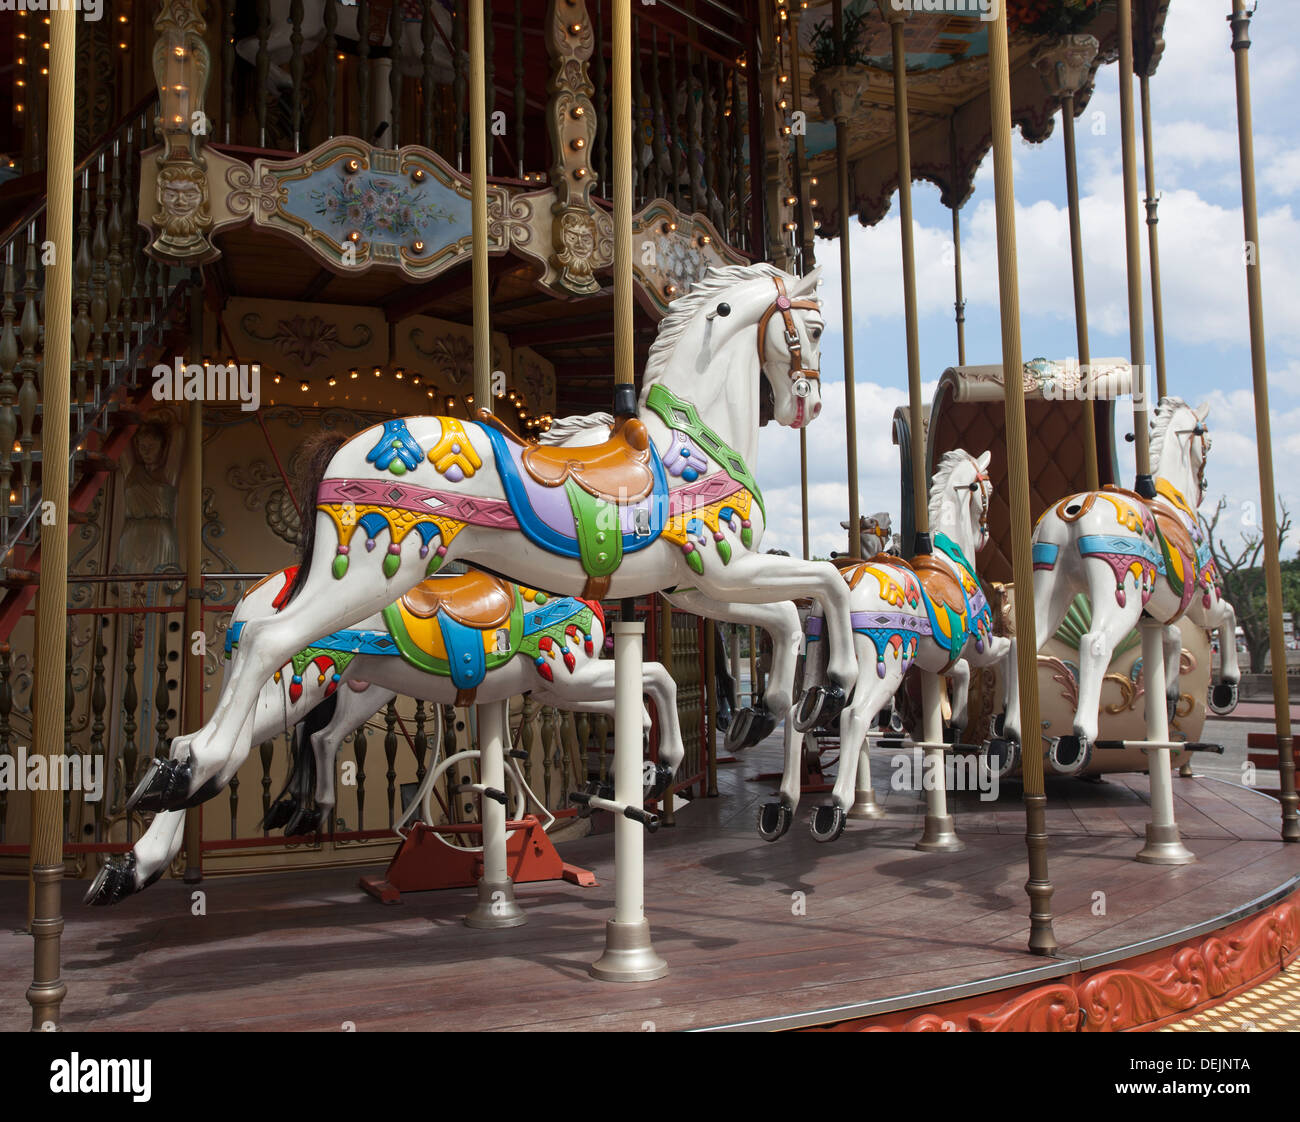 Nahaufnahme von Pferden auf einem alten altmodische französischen Stil Karussell in Paris Frankreich, auch genannt ein Karussell. Stockfoto